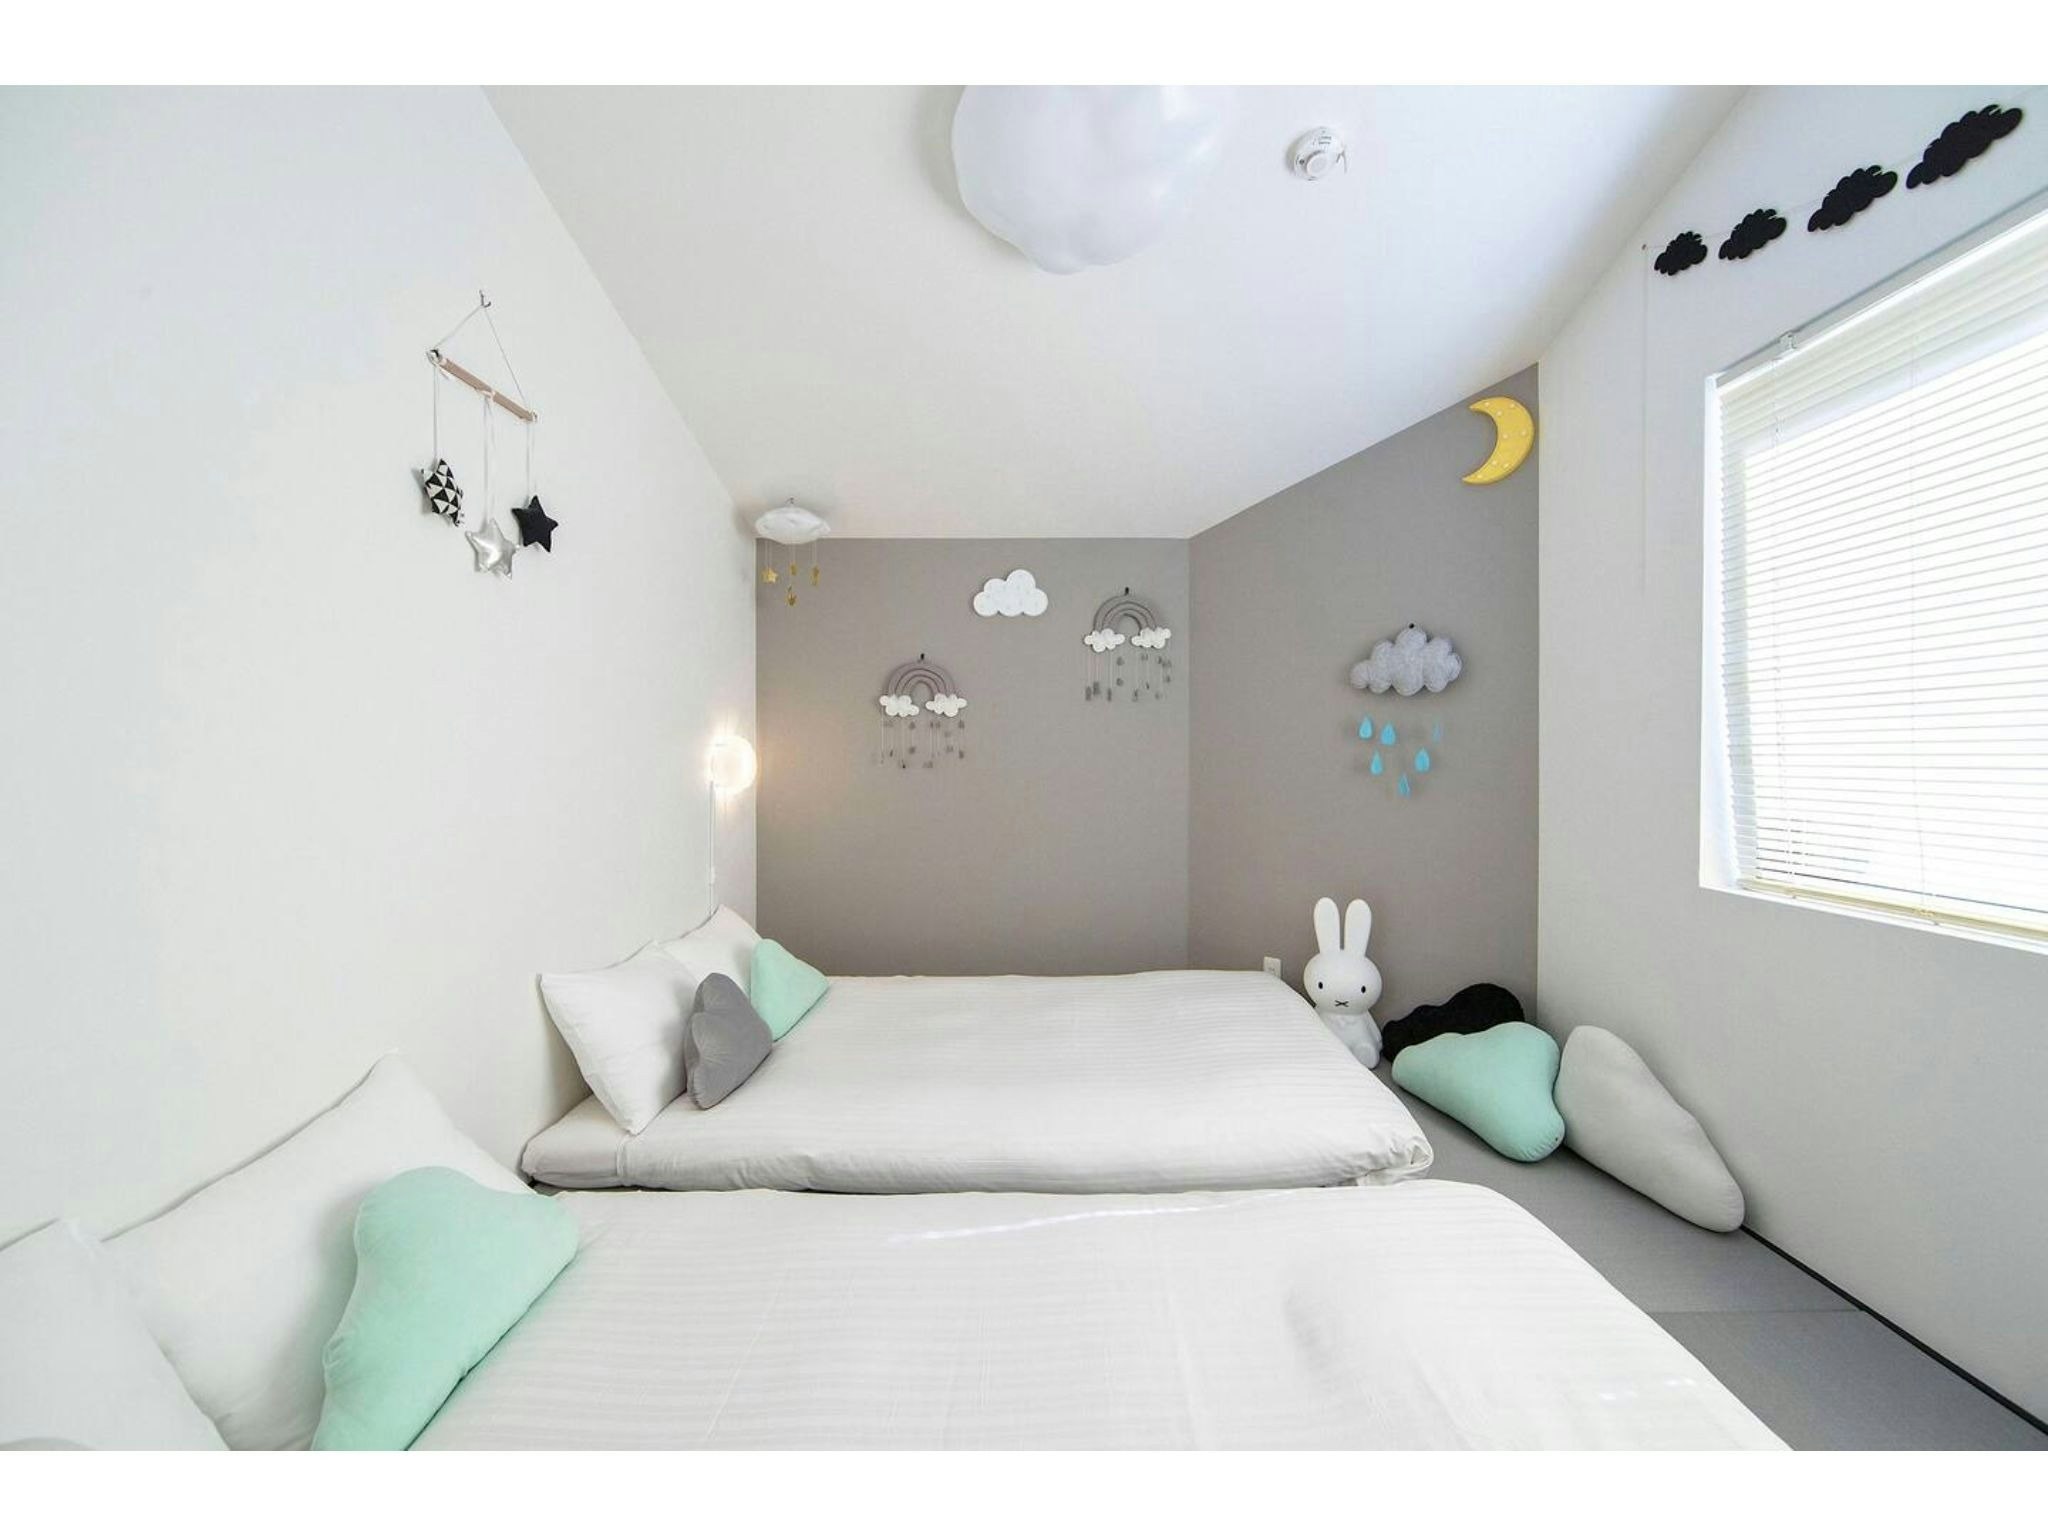 MocoMoco★可愛い雲いっぱいの一棟貸しハウス!寝室2部屋とキッチン、浴室完備